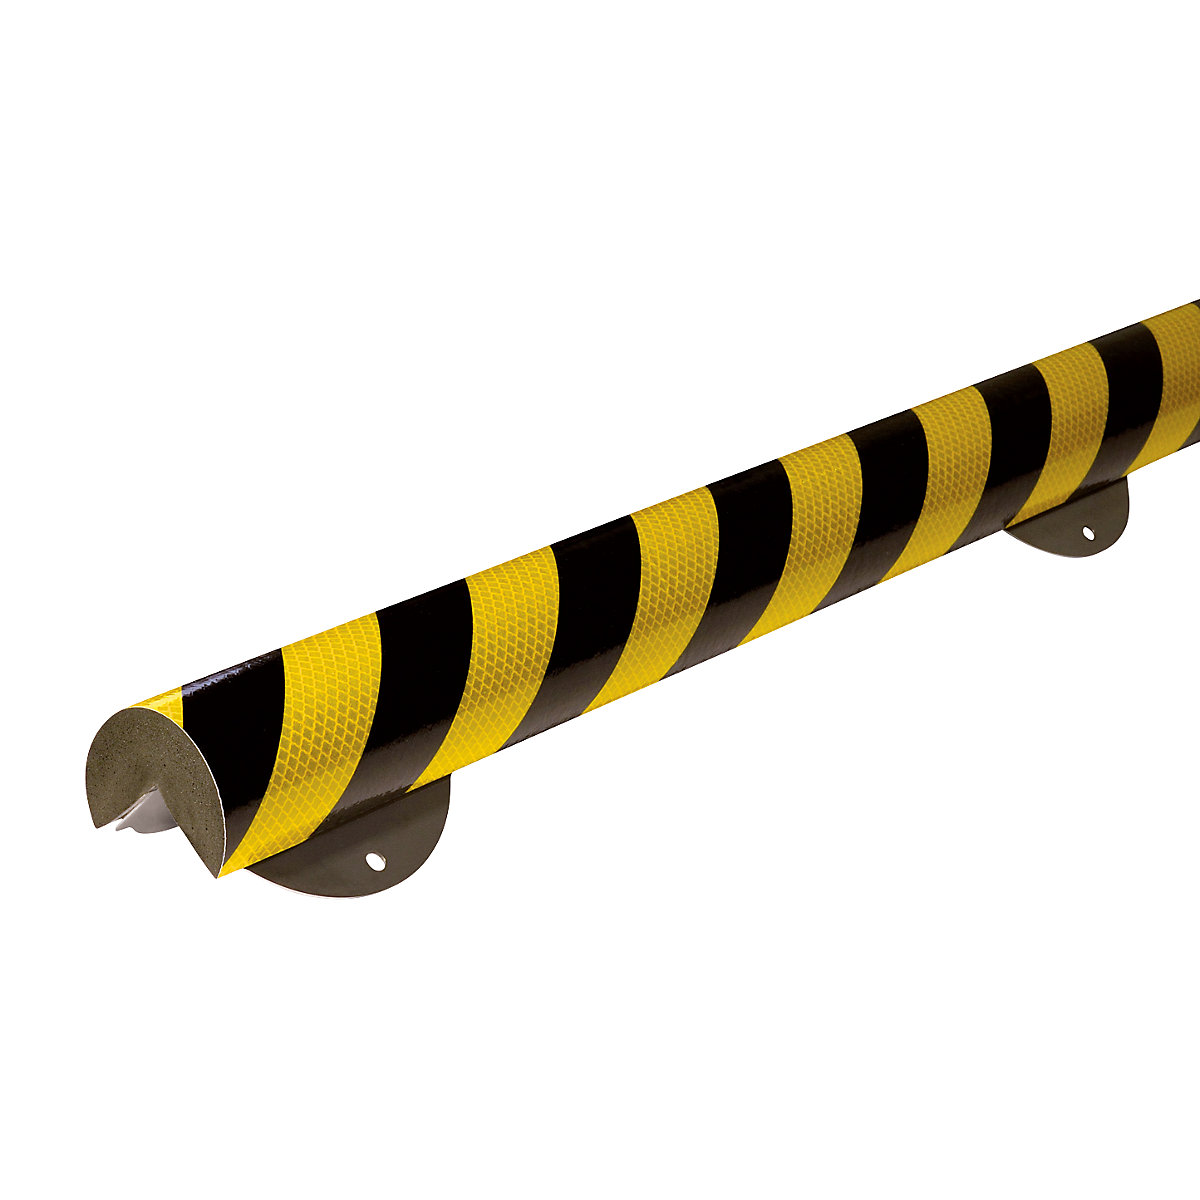 SHG – Protecție pentru colț Knuffi® cu șină de montaj, tip A+, bucată de 1 m, negru / galben, reflectorizant